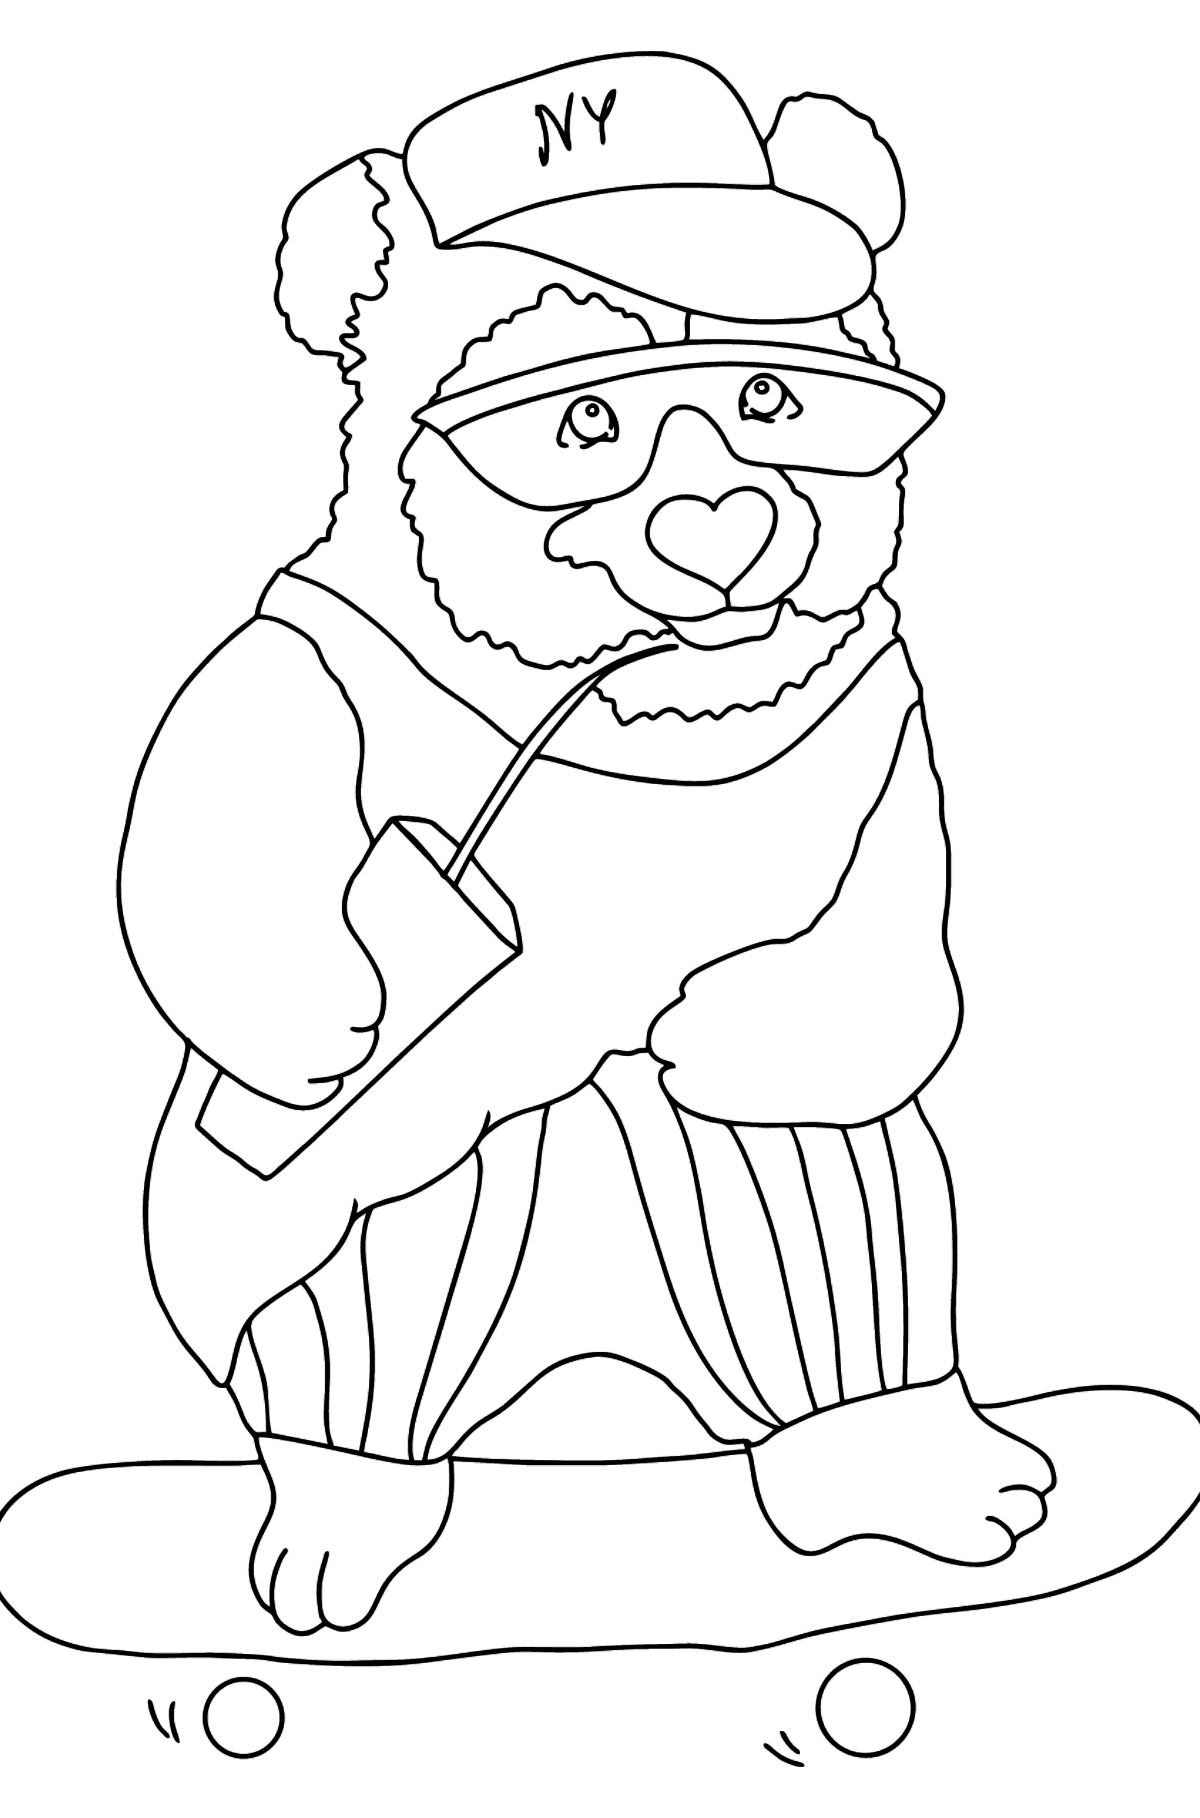 Desen de colorat panda distractiv (dificil) - Desene de colorat pentru copii